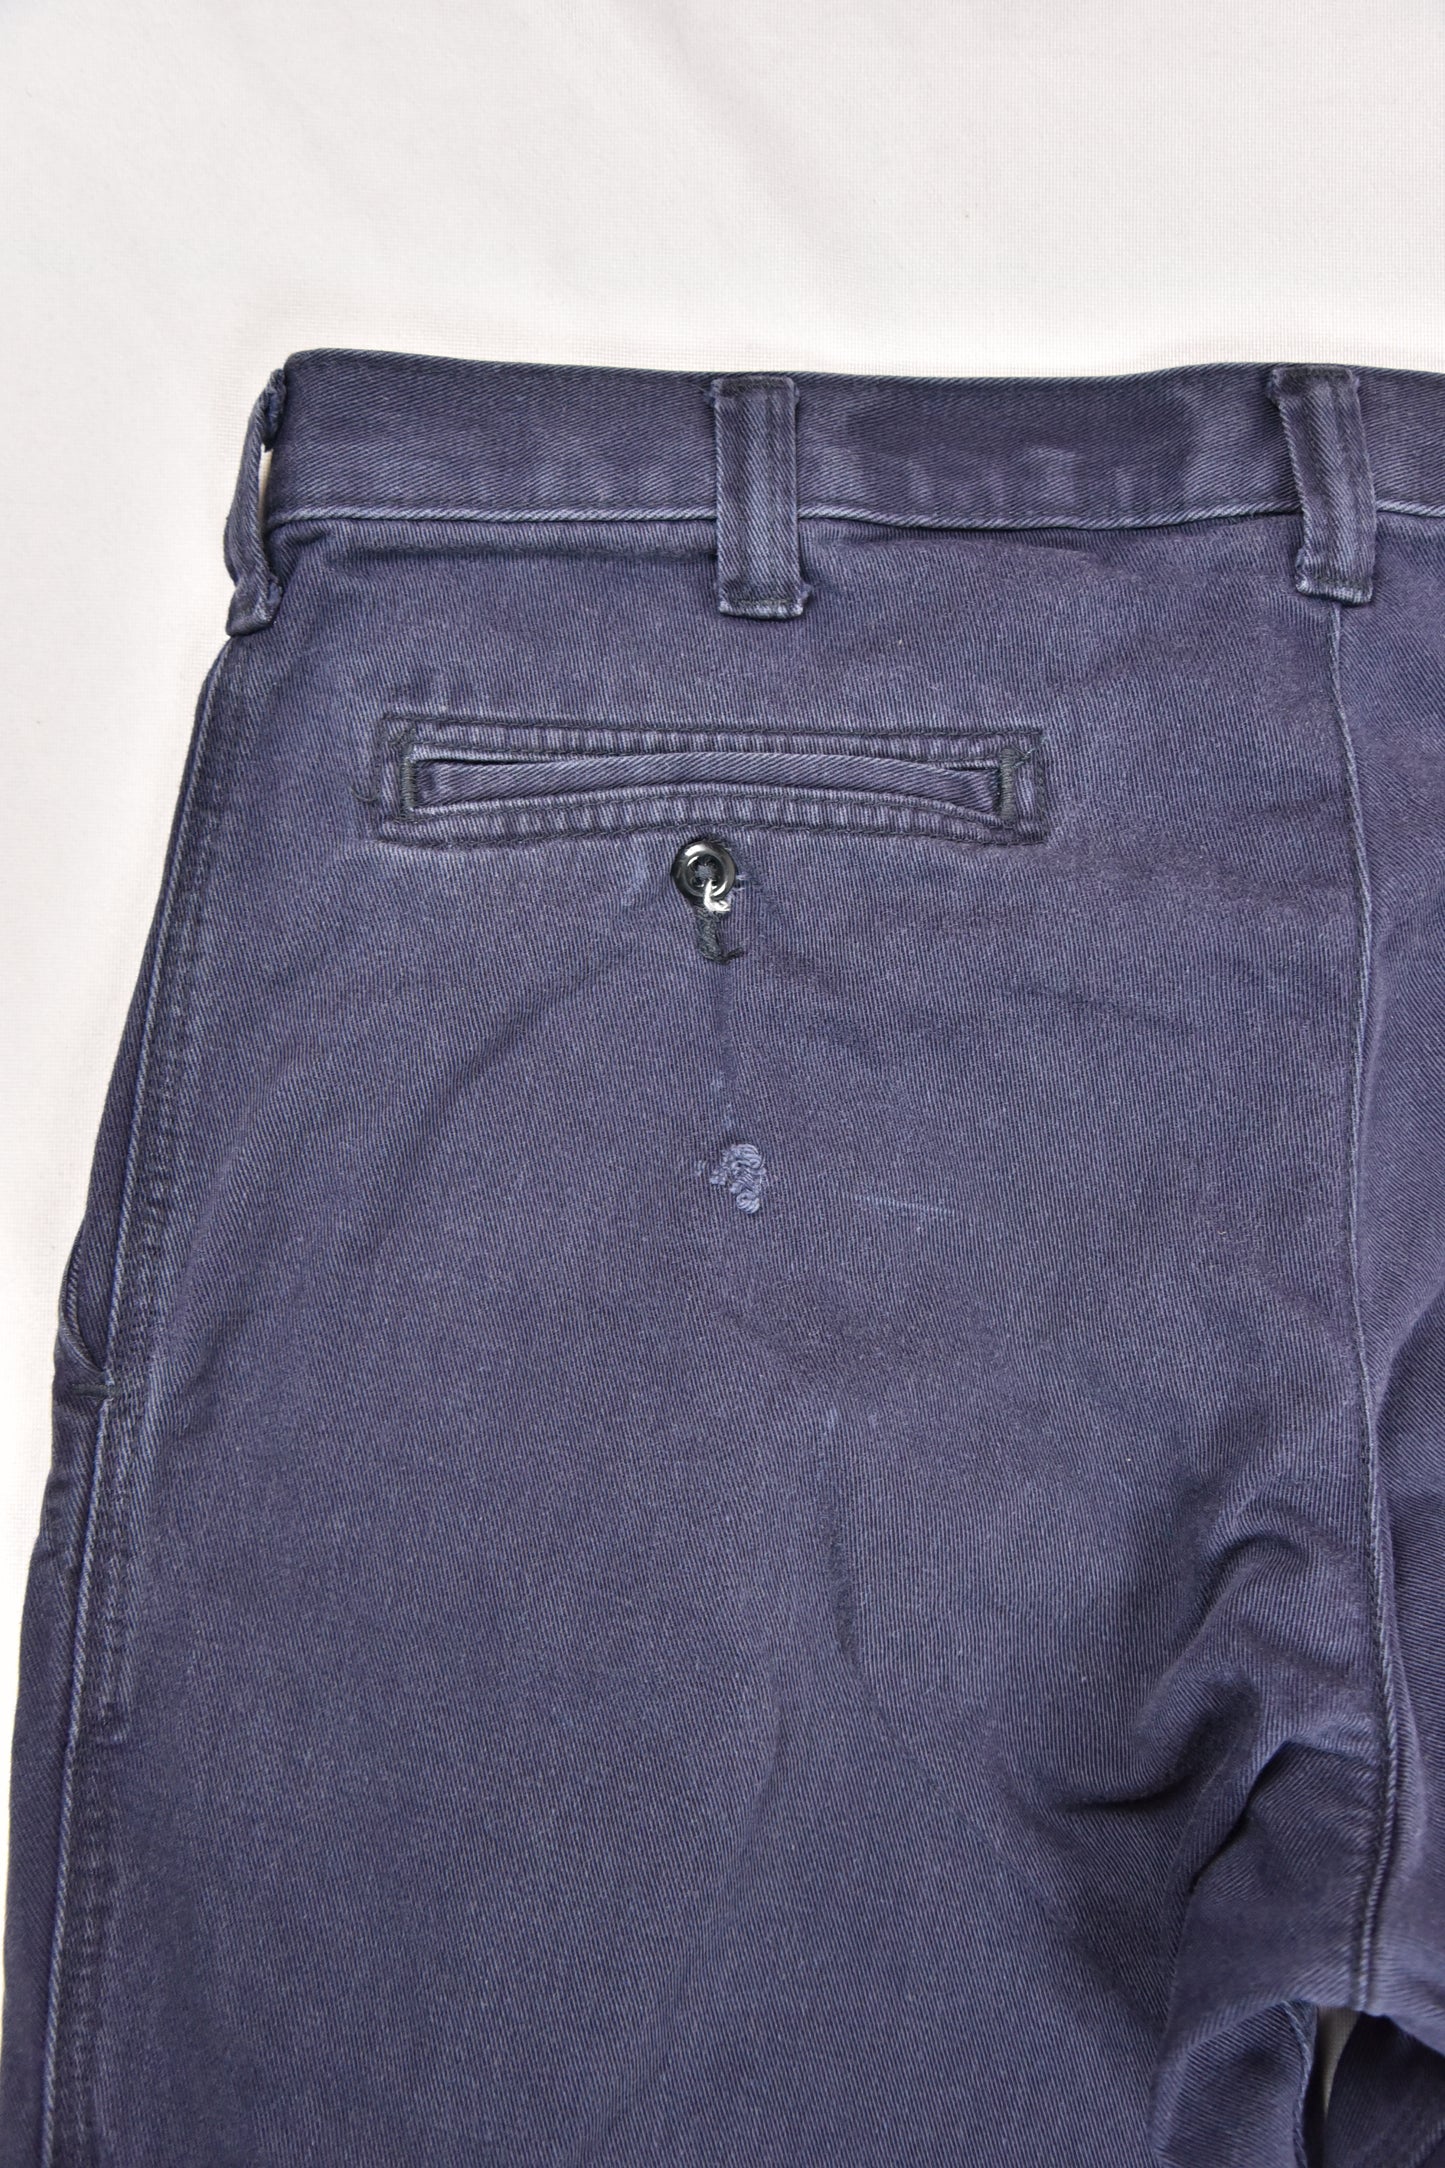 Carhartt Workwear Pants Flame Resistant Vintage / 36x32